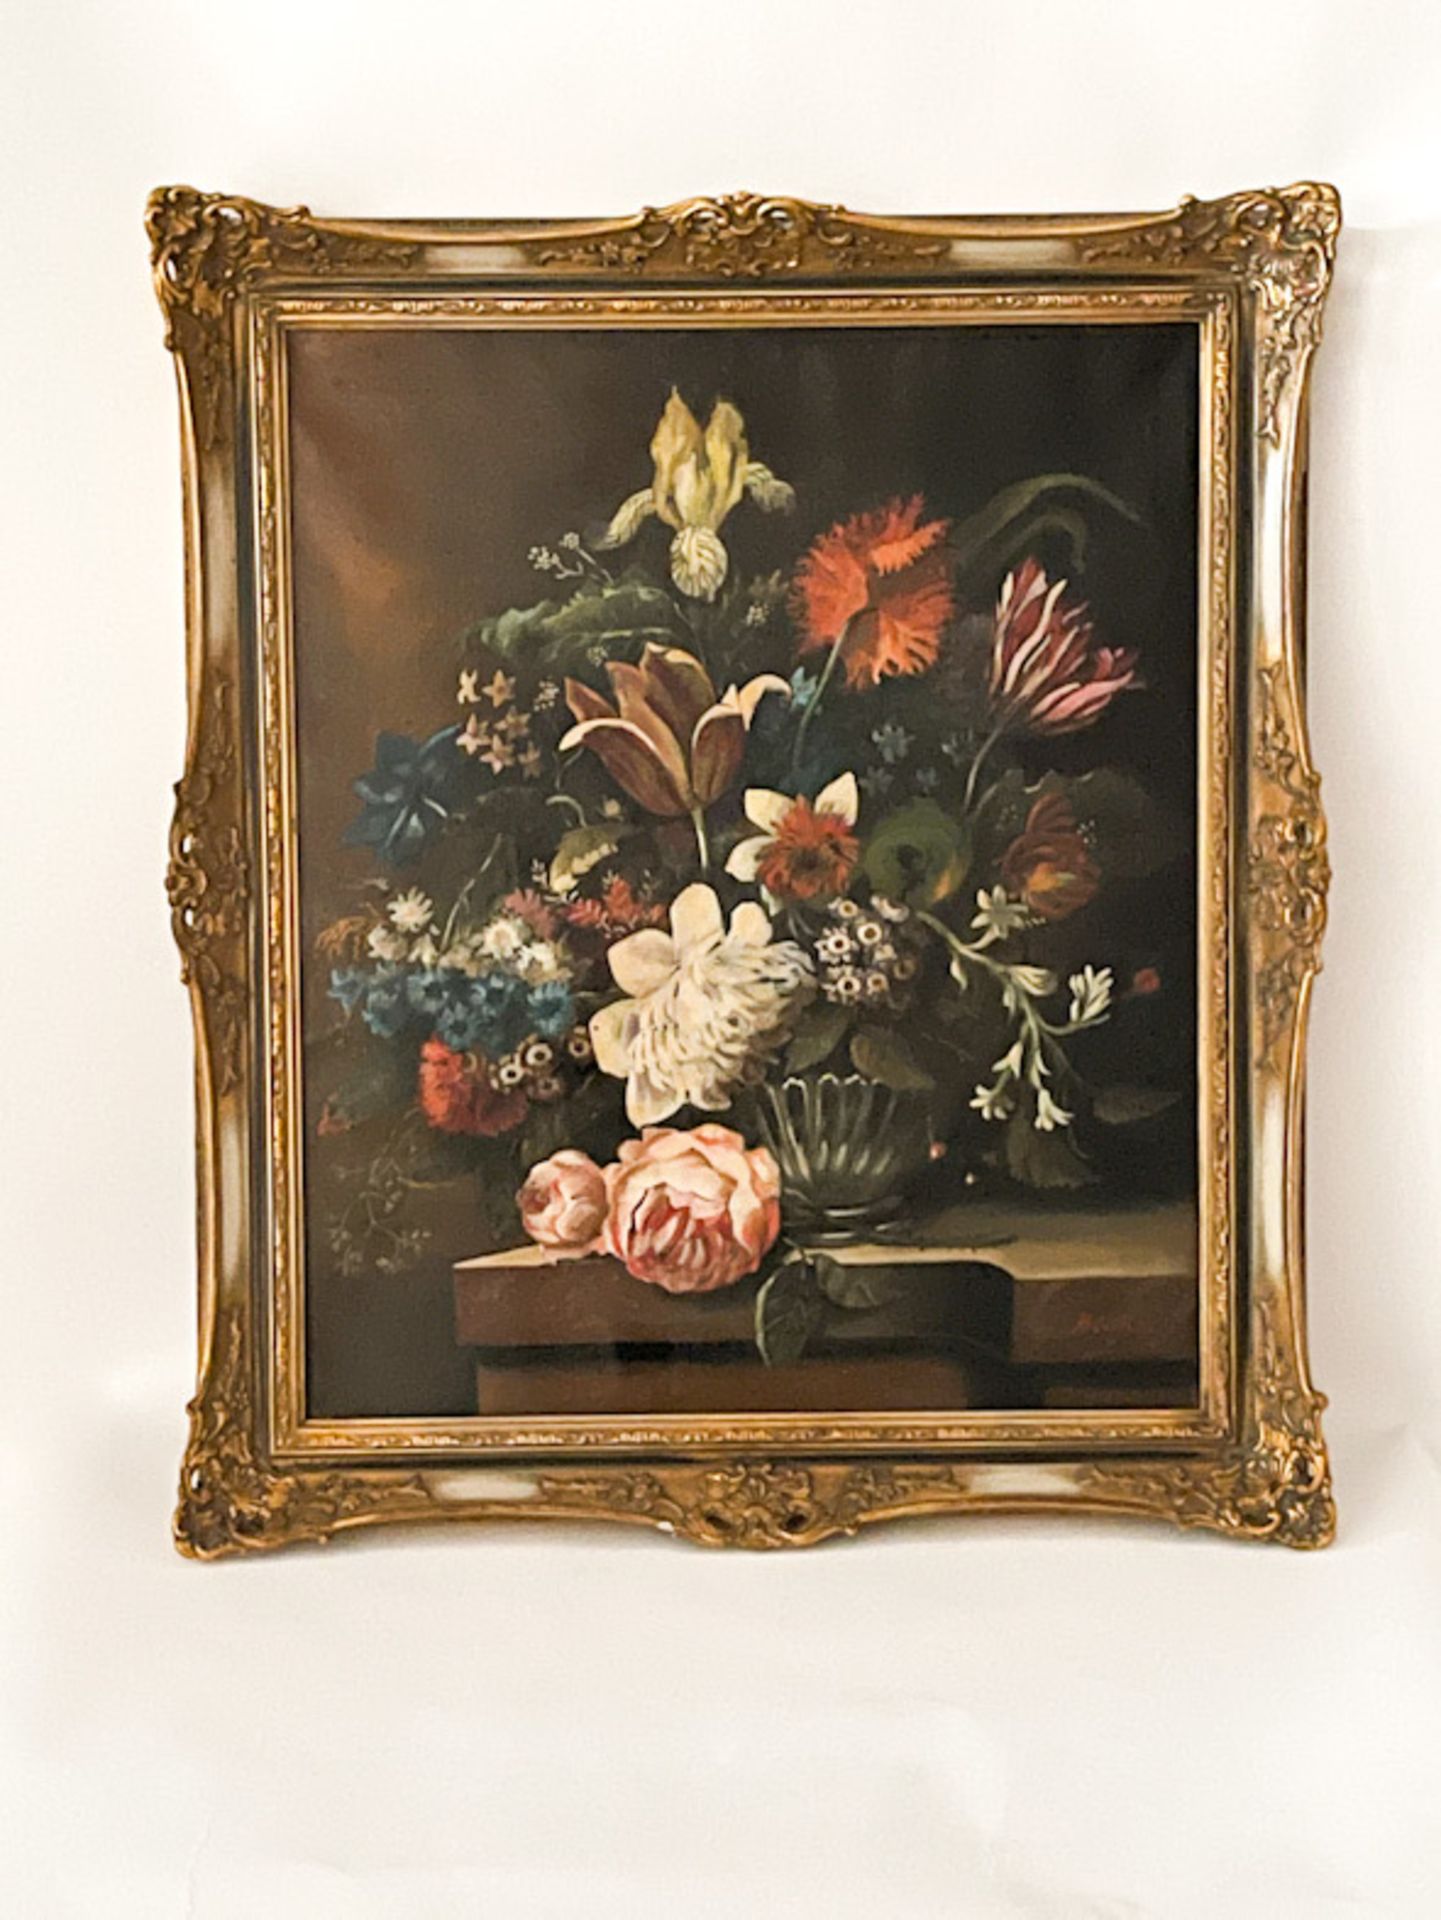 Gemälde "Blumenstilleben"